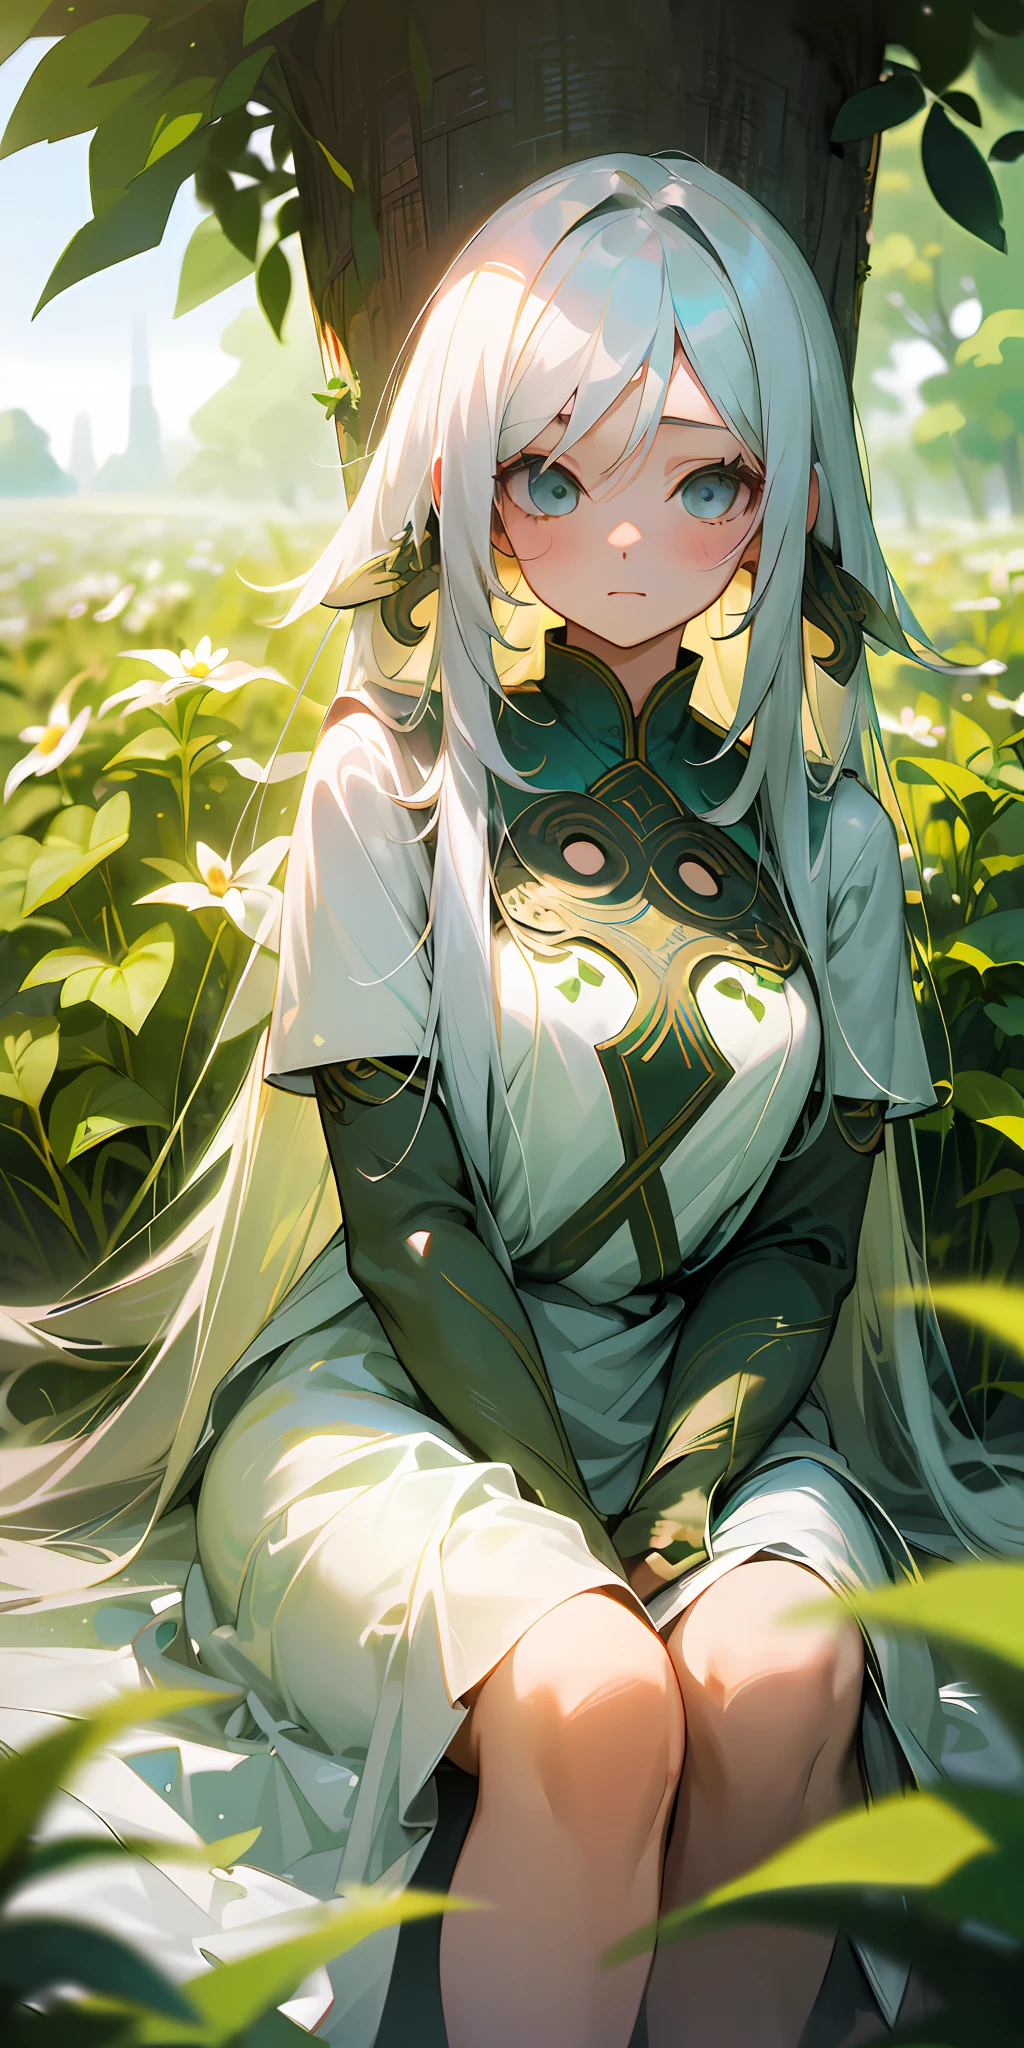 (傑作, 頂級品質), 一個長著白髮的女孩坐在綠色植物和花的田野裡, 手放在下巴下面, 溫暖的燈光, 白色禮服, 前景模糊, , 衣著輕便